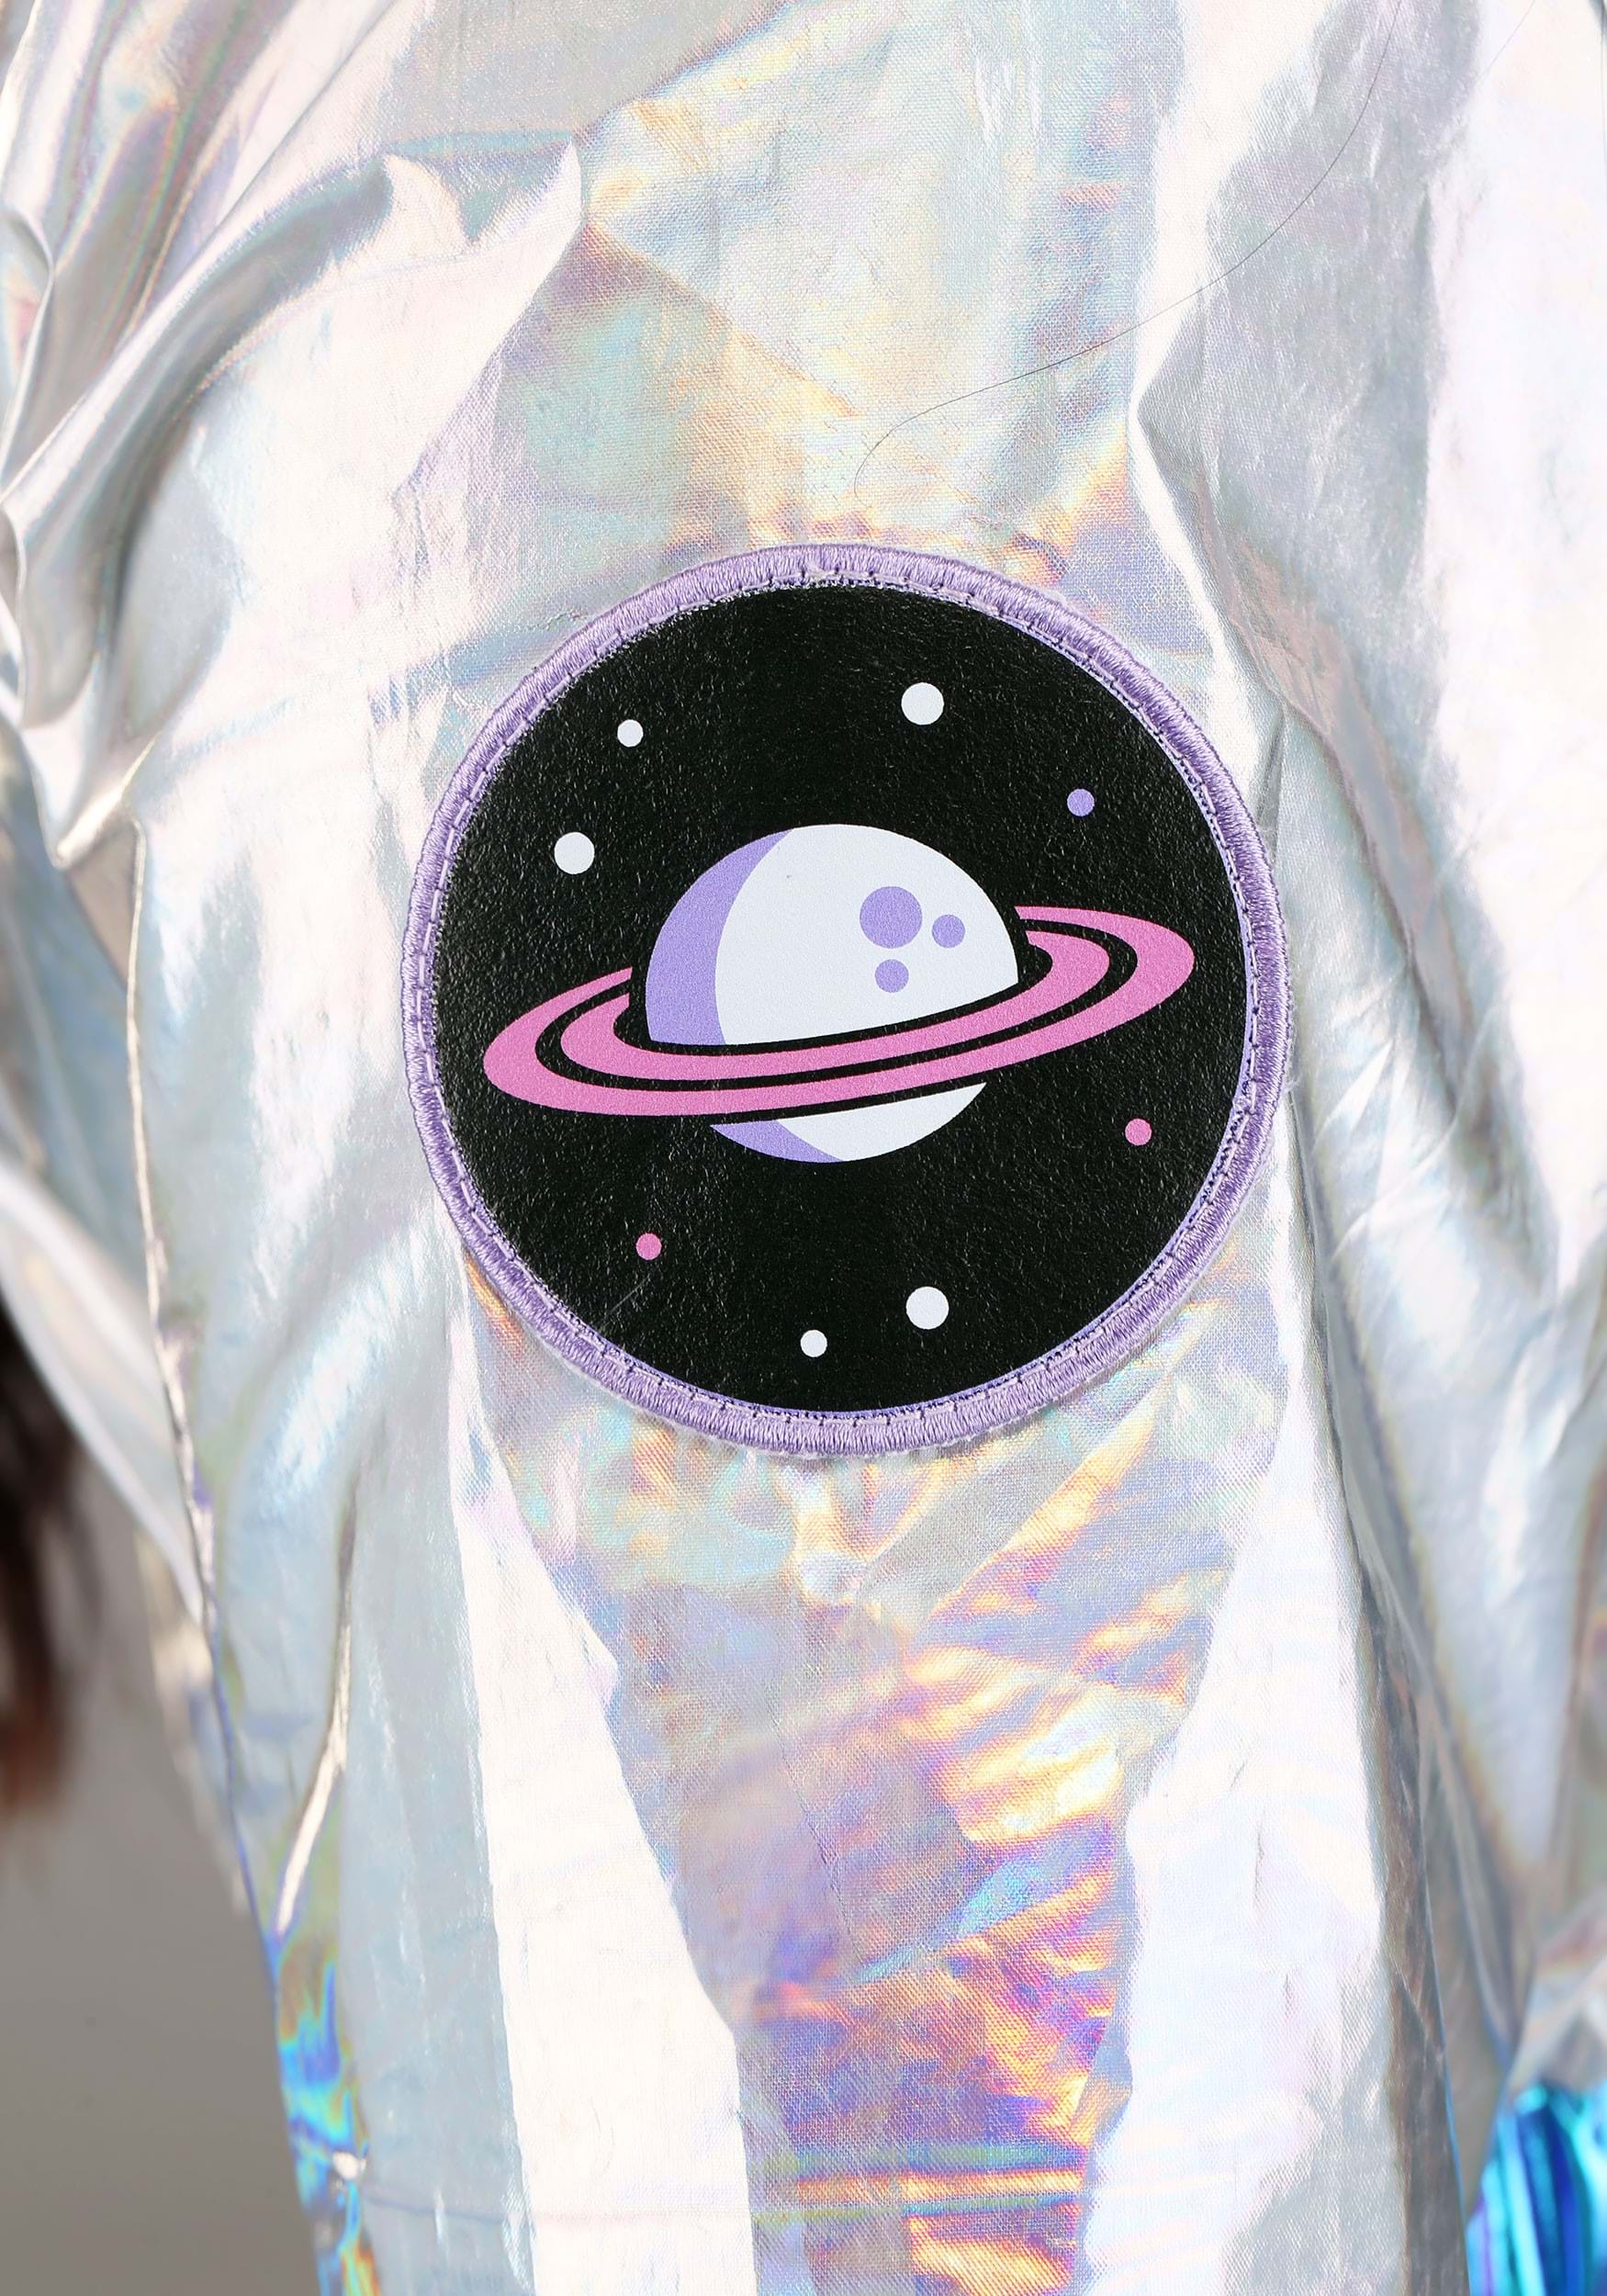 Cosmonaut Women Alien Costume